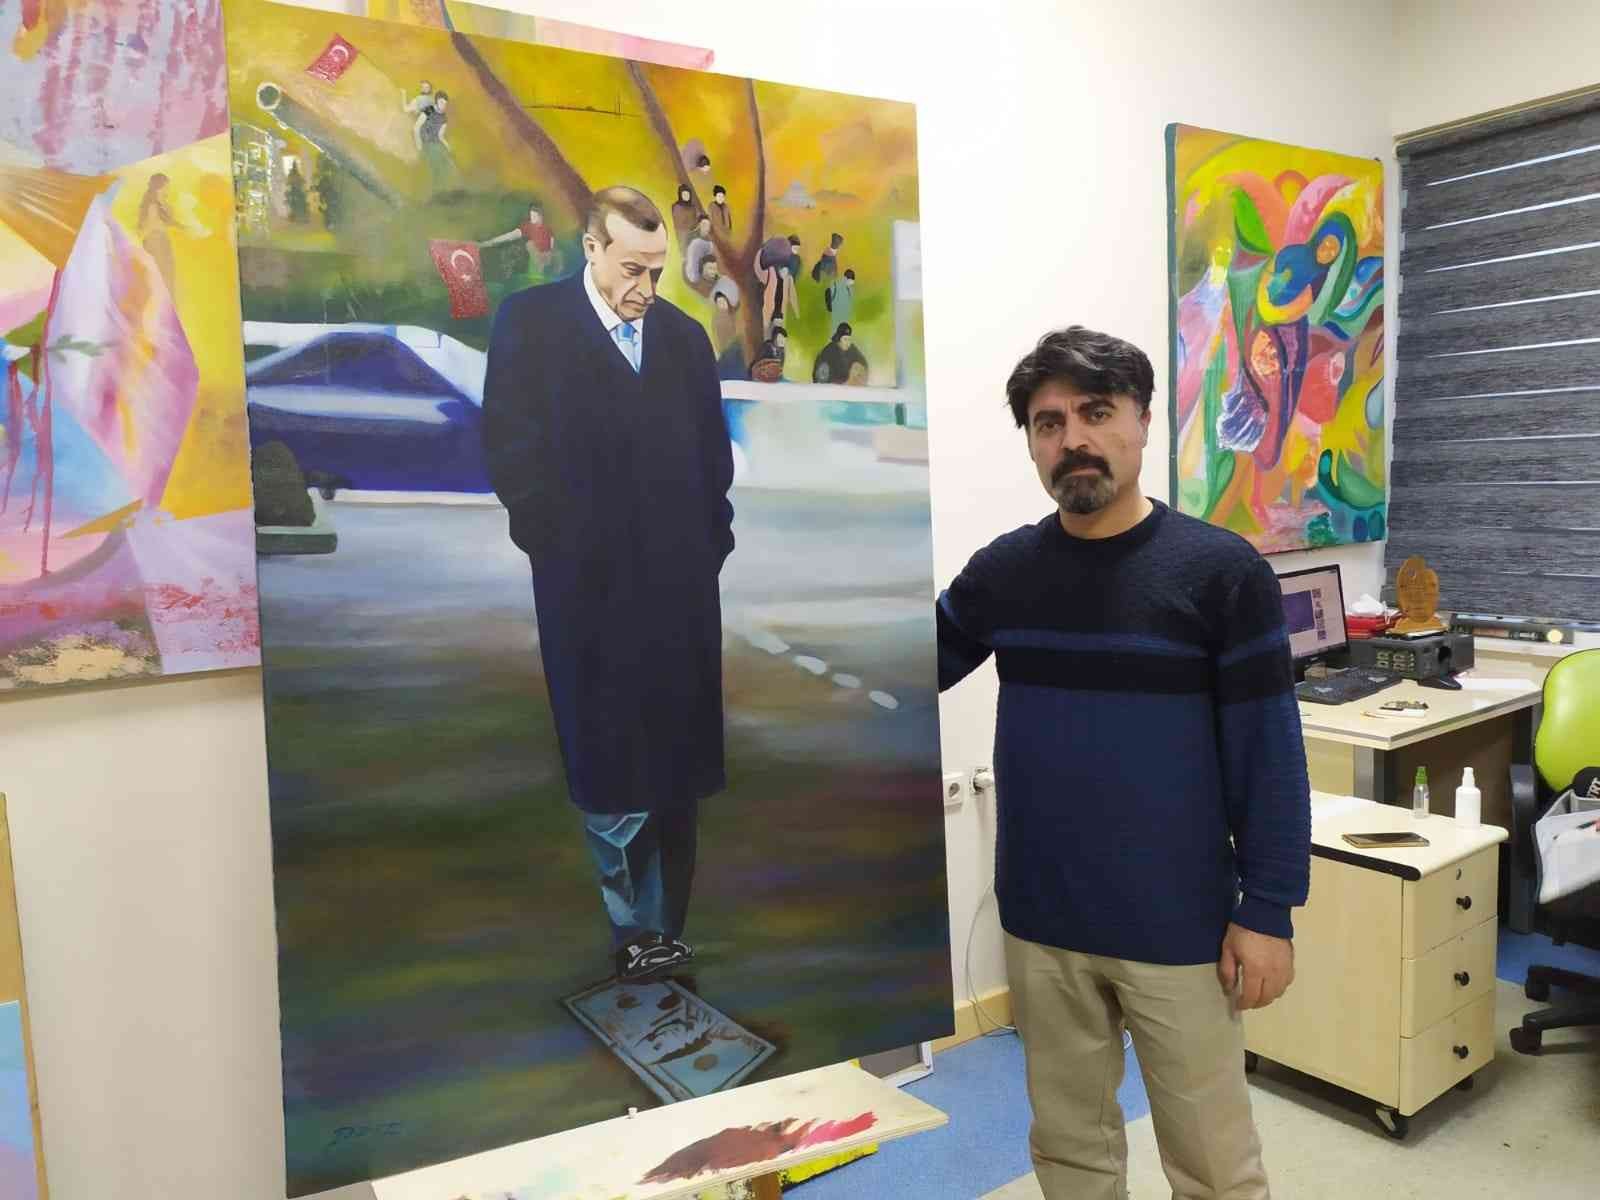 Suriyeli ünlü ressamdan Cumhurbaşkanına anlamlı tablo #gaziantep